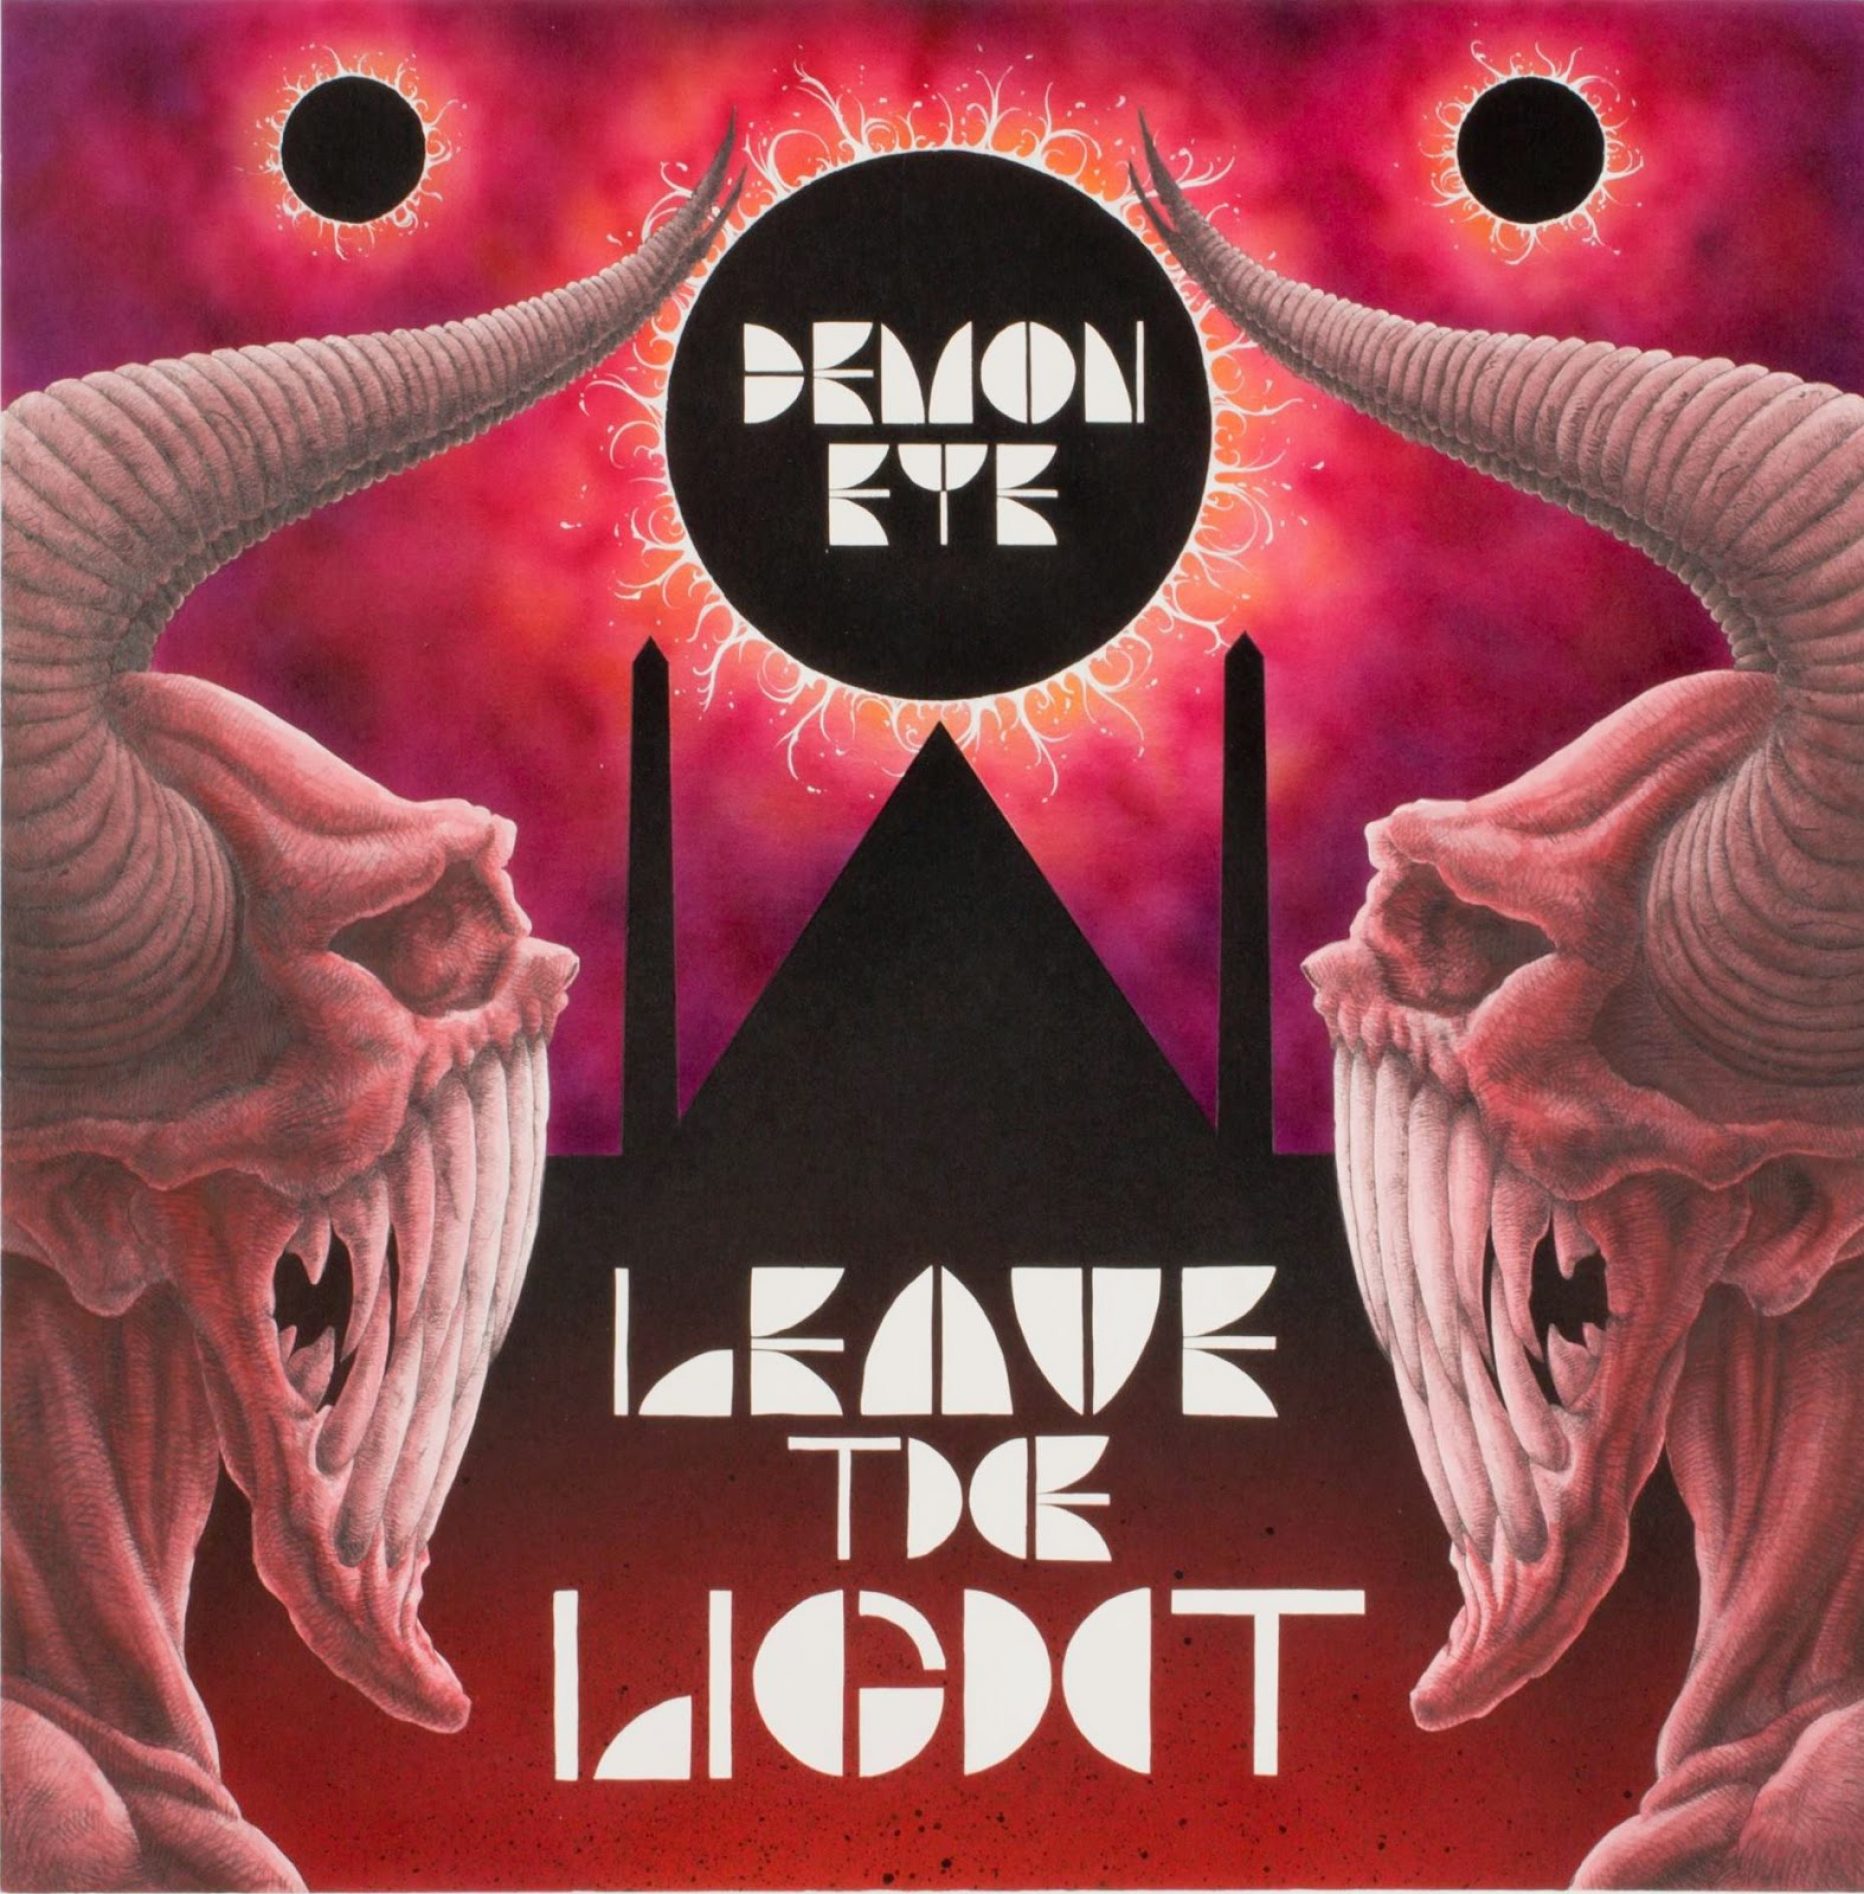 Demon Eye – Leave the light